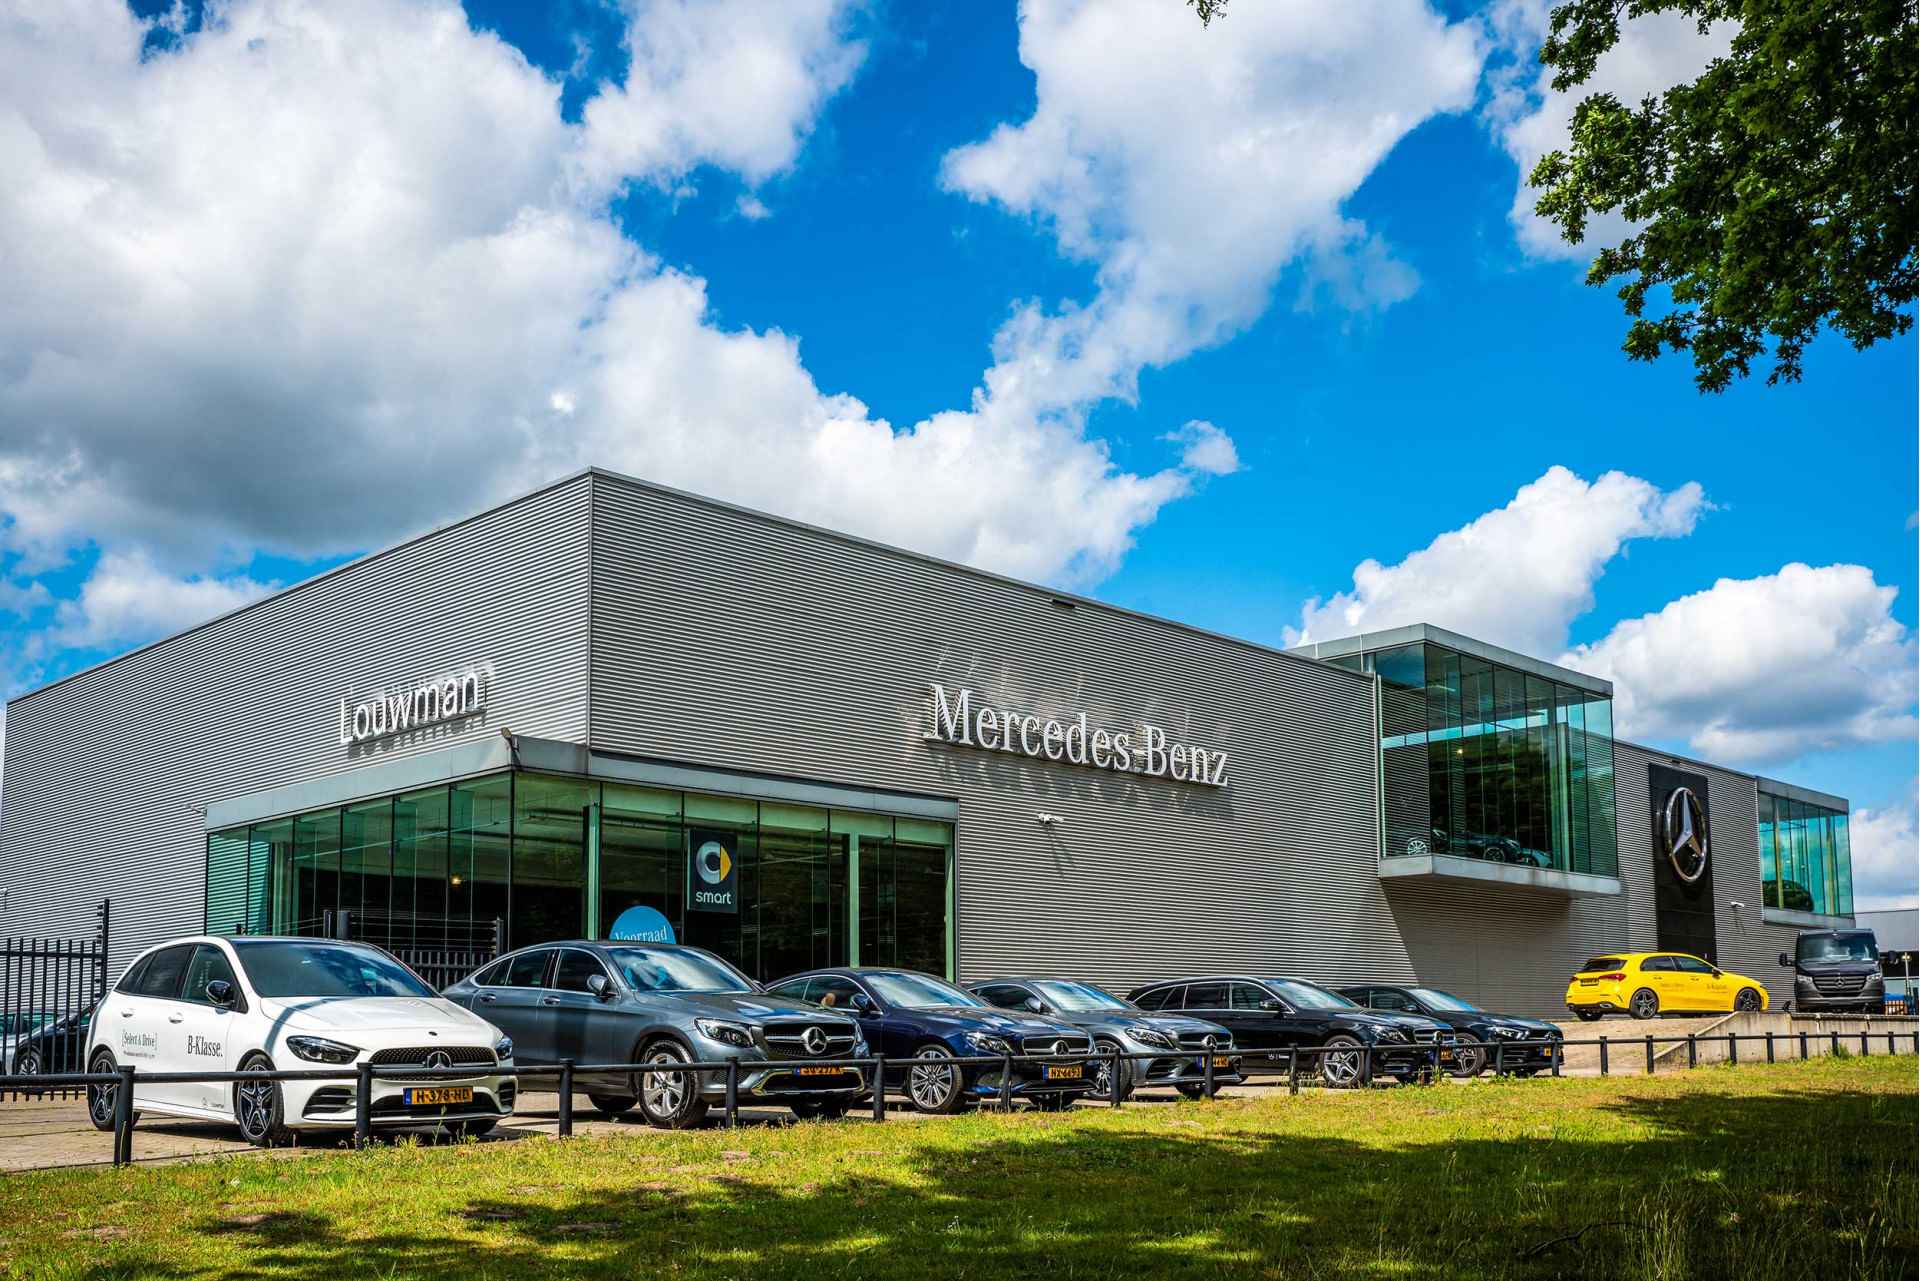 Mercedes-Benz GLA 200 AMG Premium Plus Limited | Multispaaks lichtmetalen velgen | Treeplanken | Navigatie | Parking support | Leder bekleding | inclusief 24 maanden MB Certified garantie voor europa - 37/39